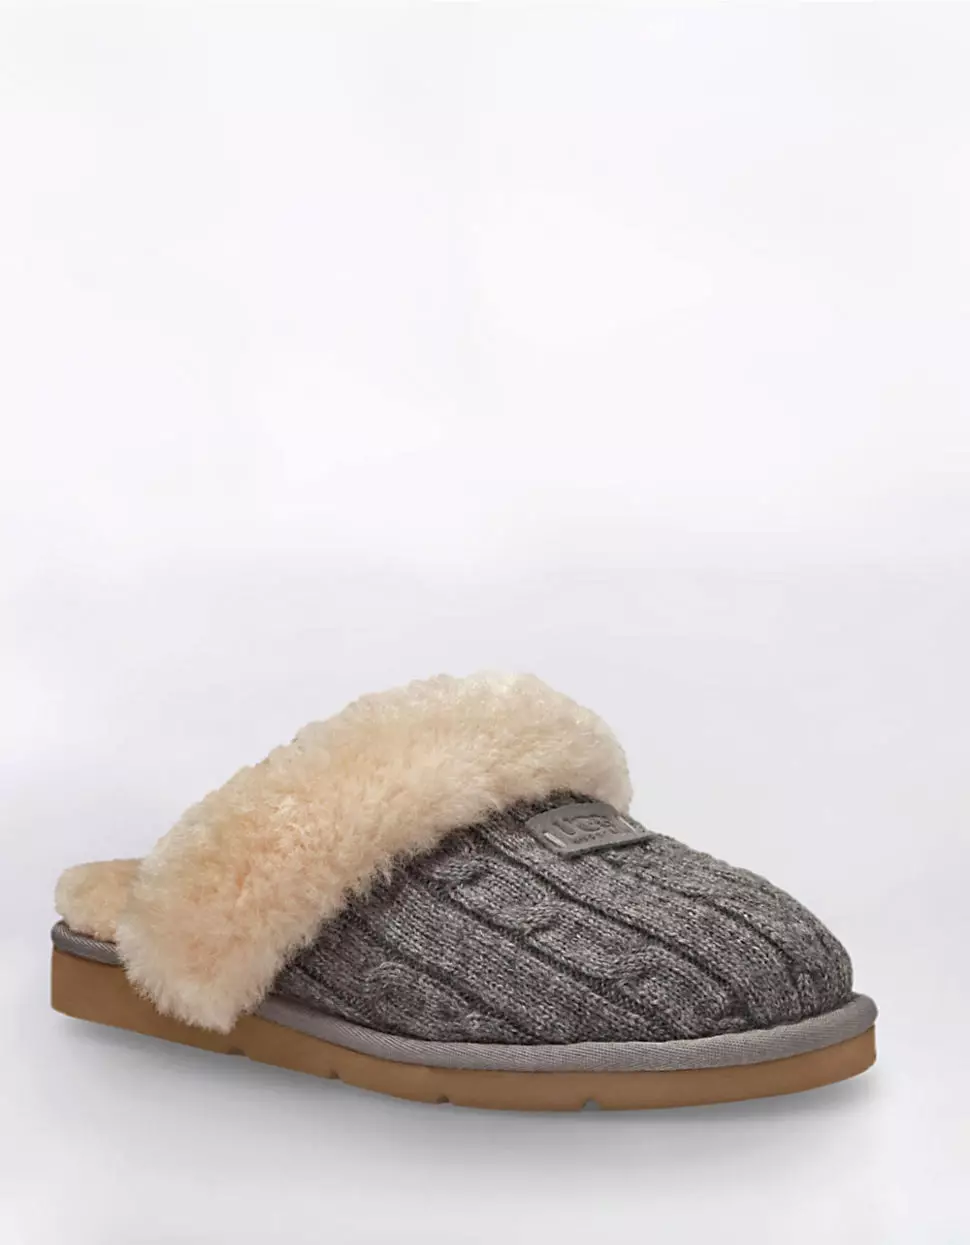 Gebreide slippers (72 foto's): Modellen voor kinderen en vrouwen op de zool, mooie en eenvoudige kamer slippers - sneakers, japans, van vierkanten 14259_68